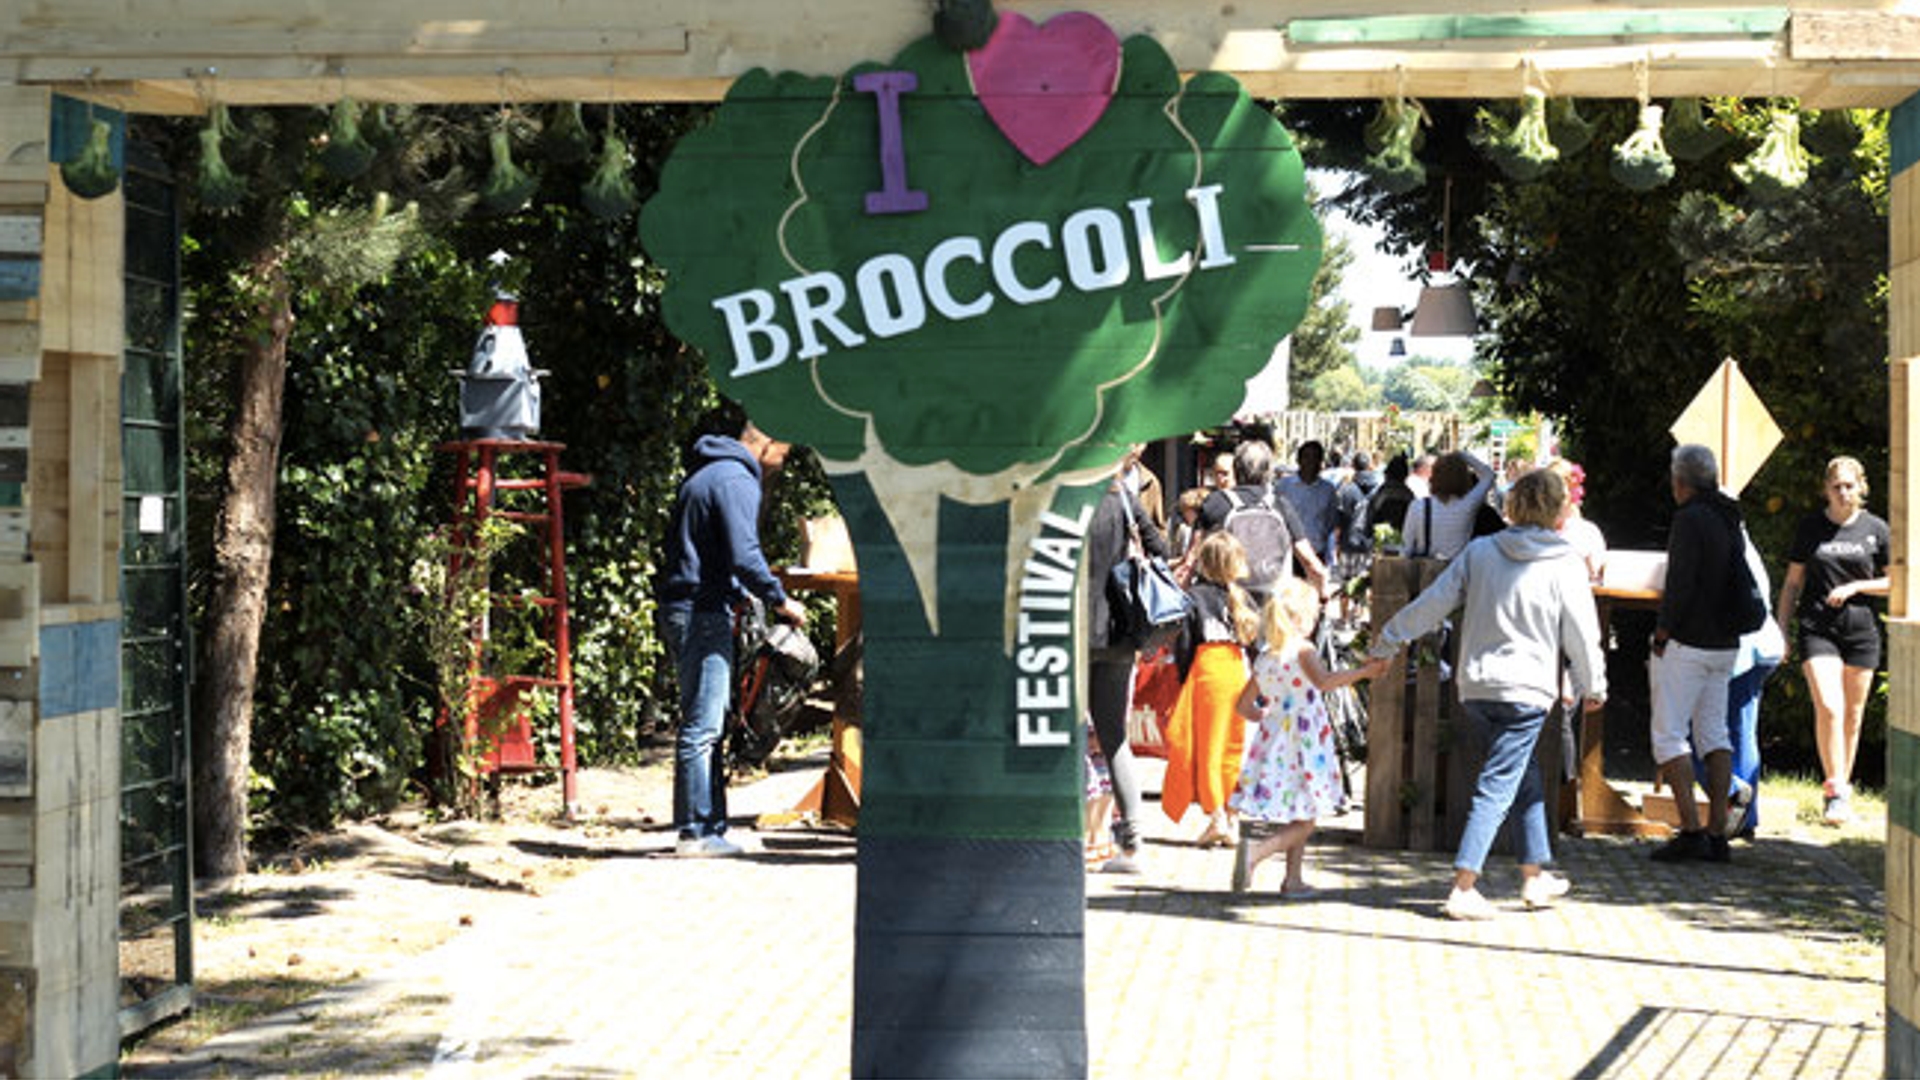 Broccoli festival